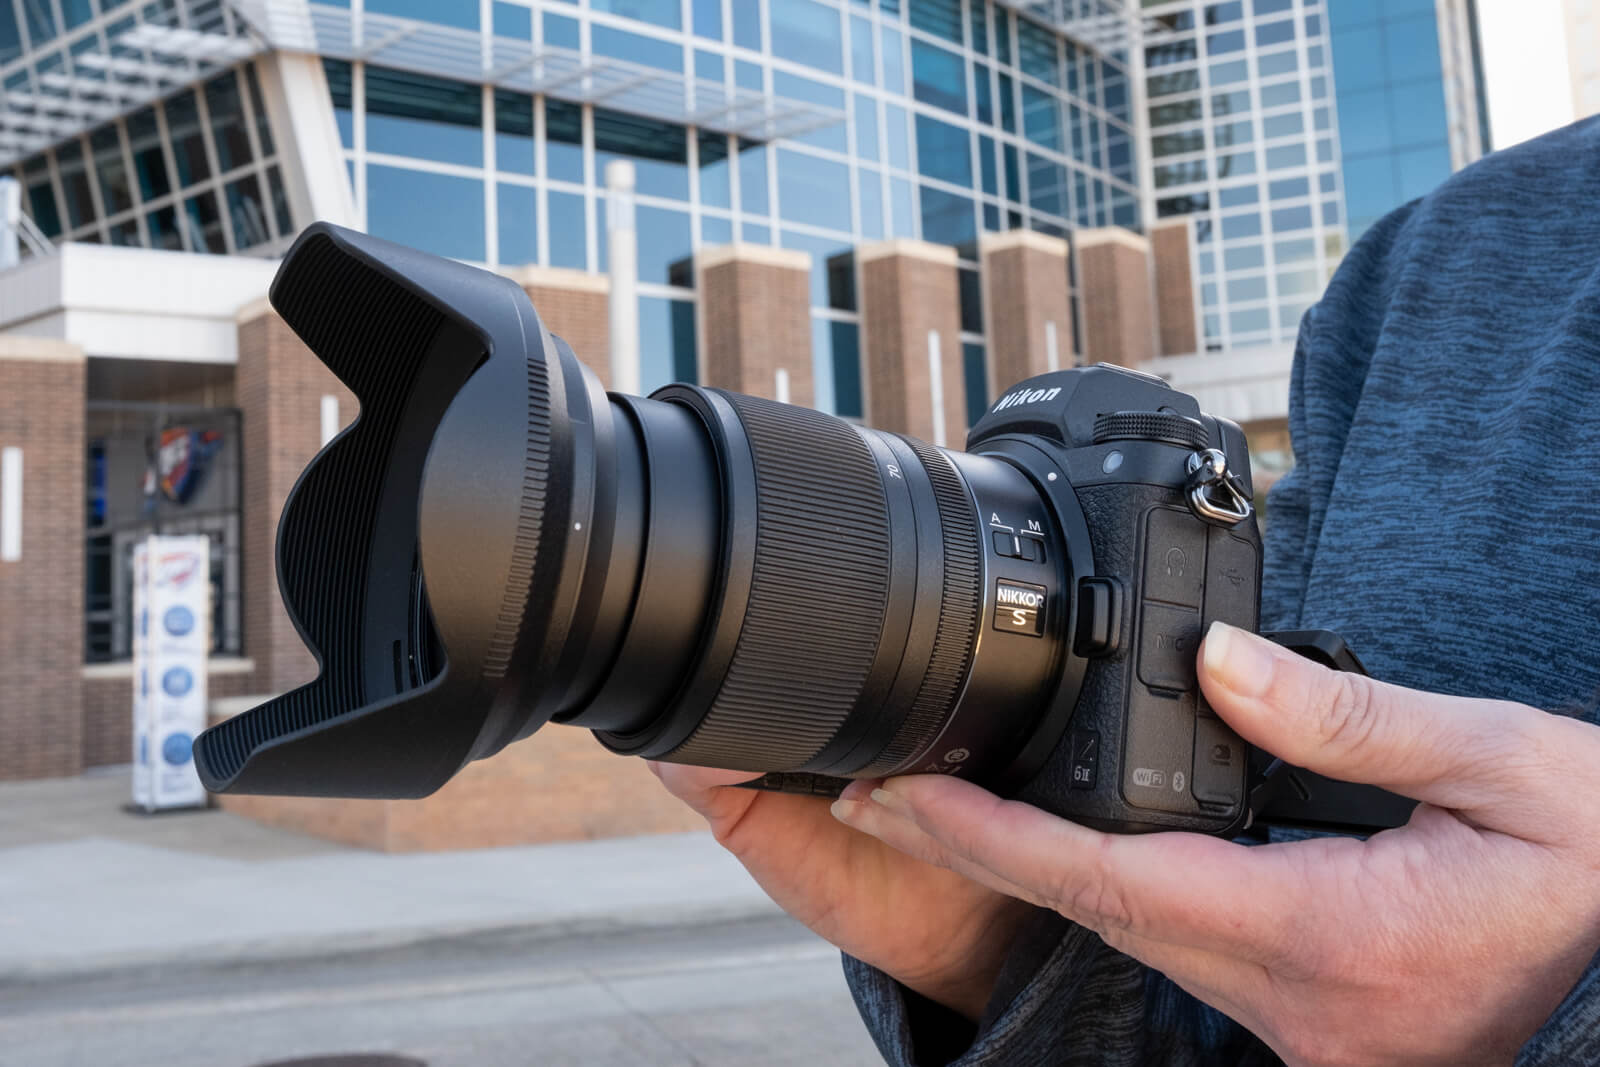 カメラ レンズ(ズーム) Nikon Z 24-70mm F/4 S review: A kit lens that punches above its weight